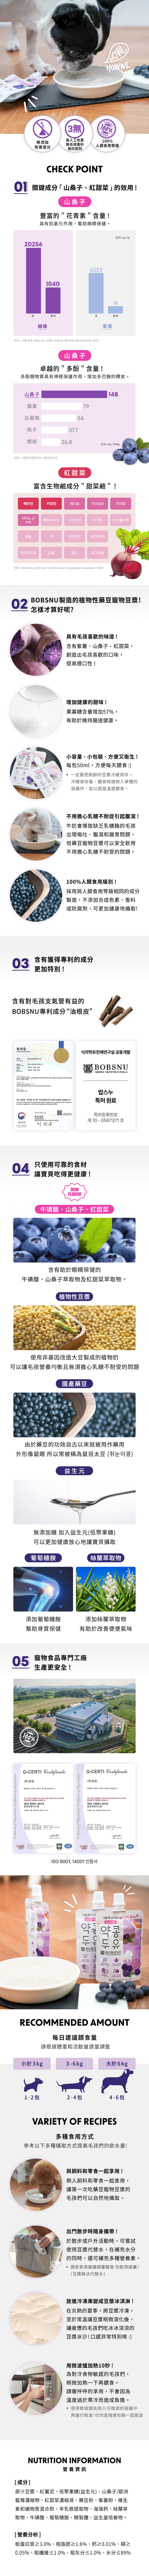 HOWLPOT藍莓豆漿-官網-寬860-02